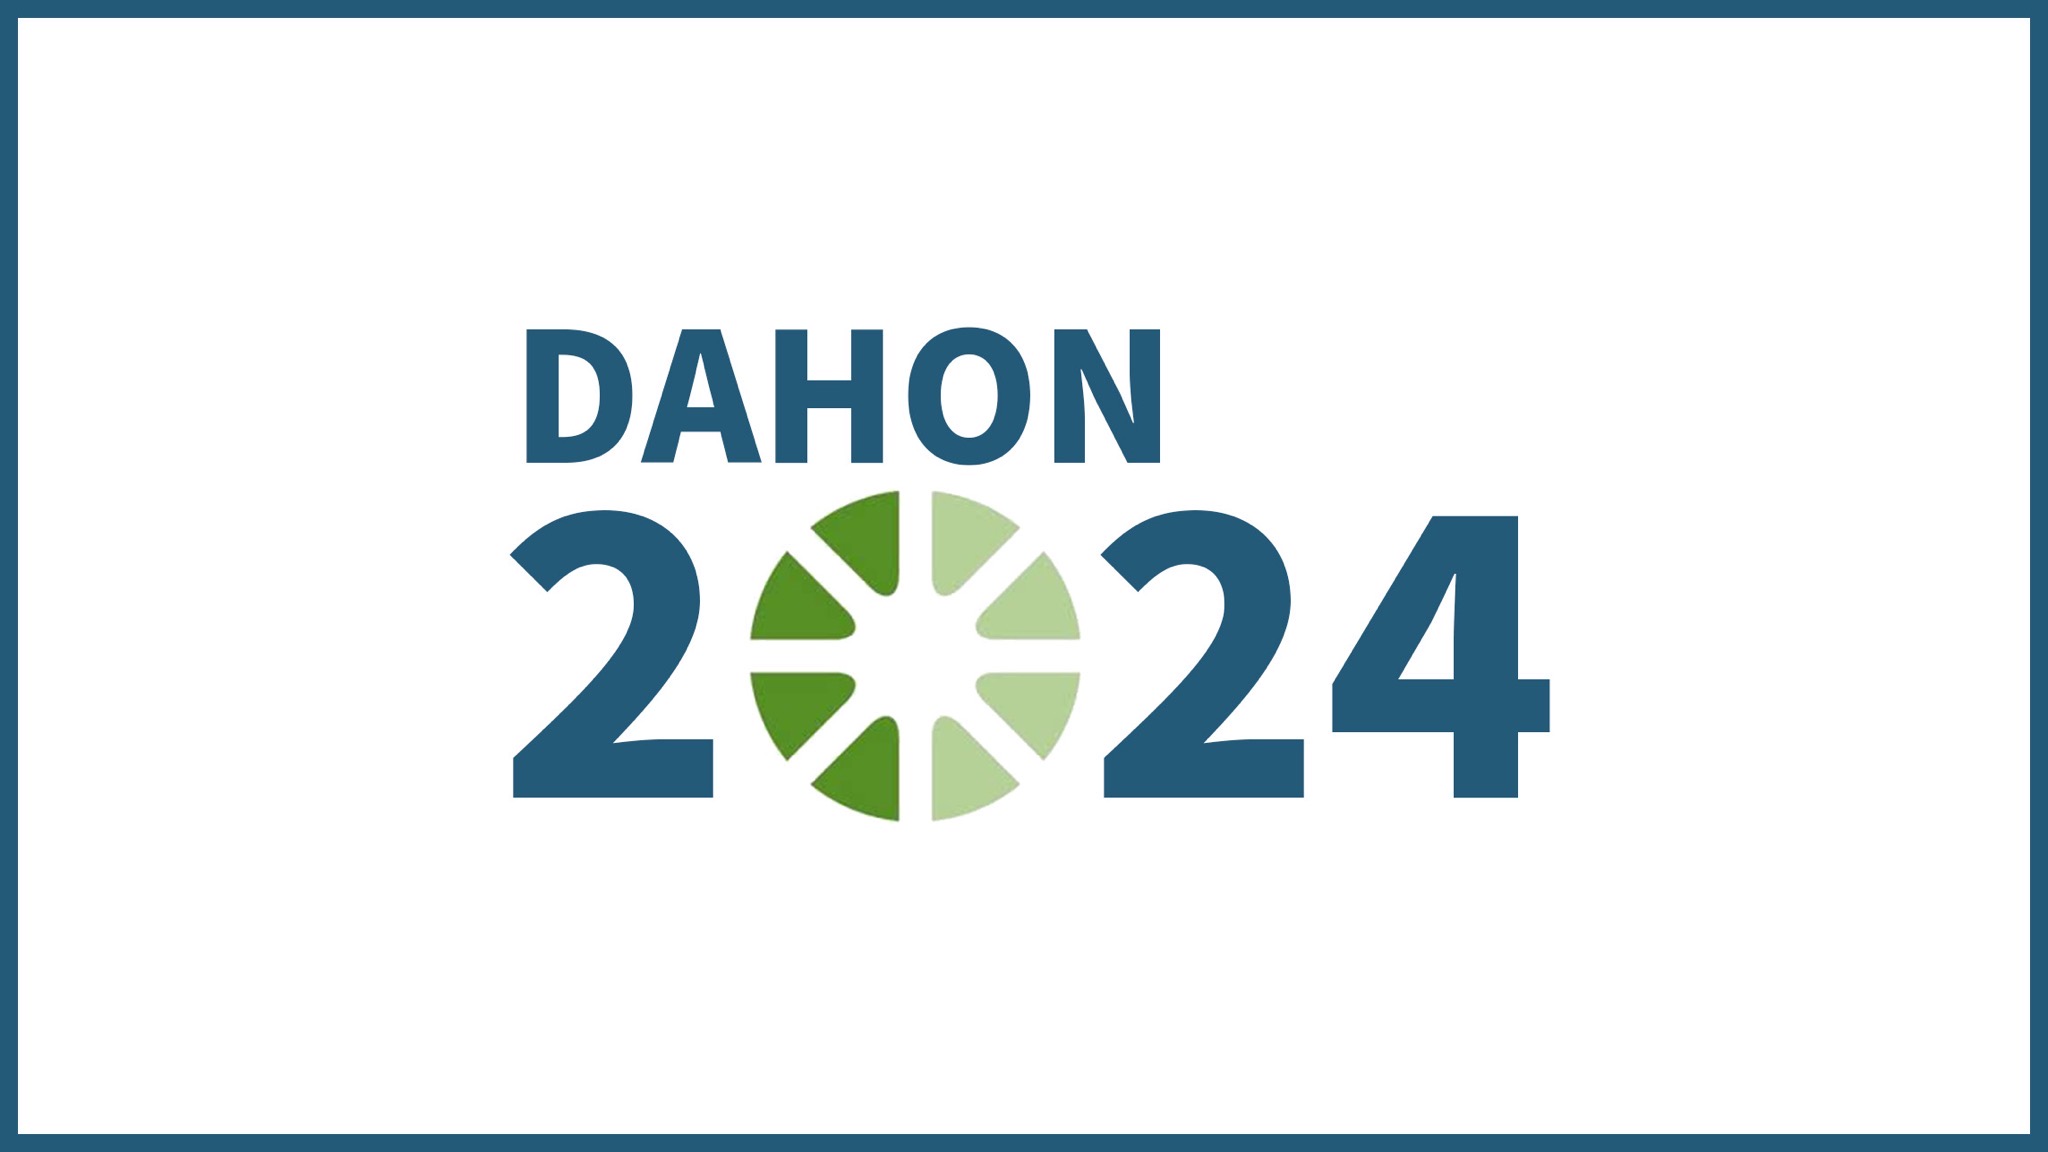 Dahon 2024 unveiled